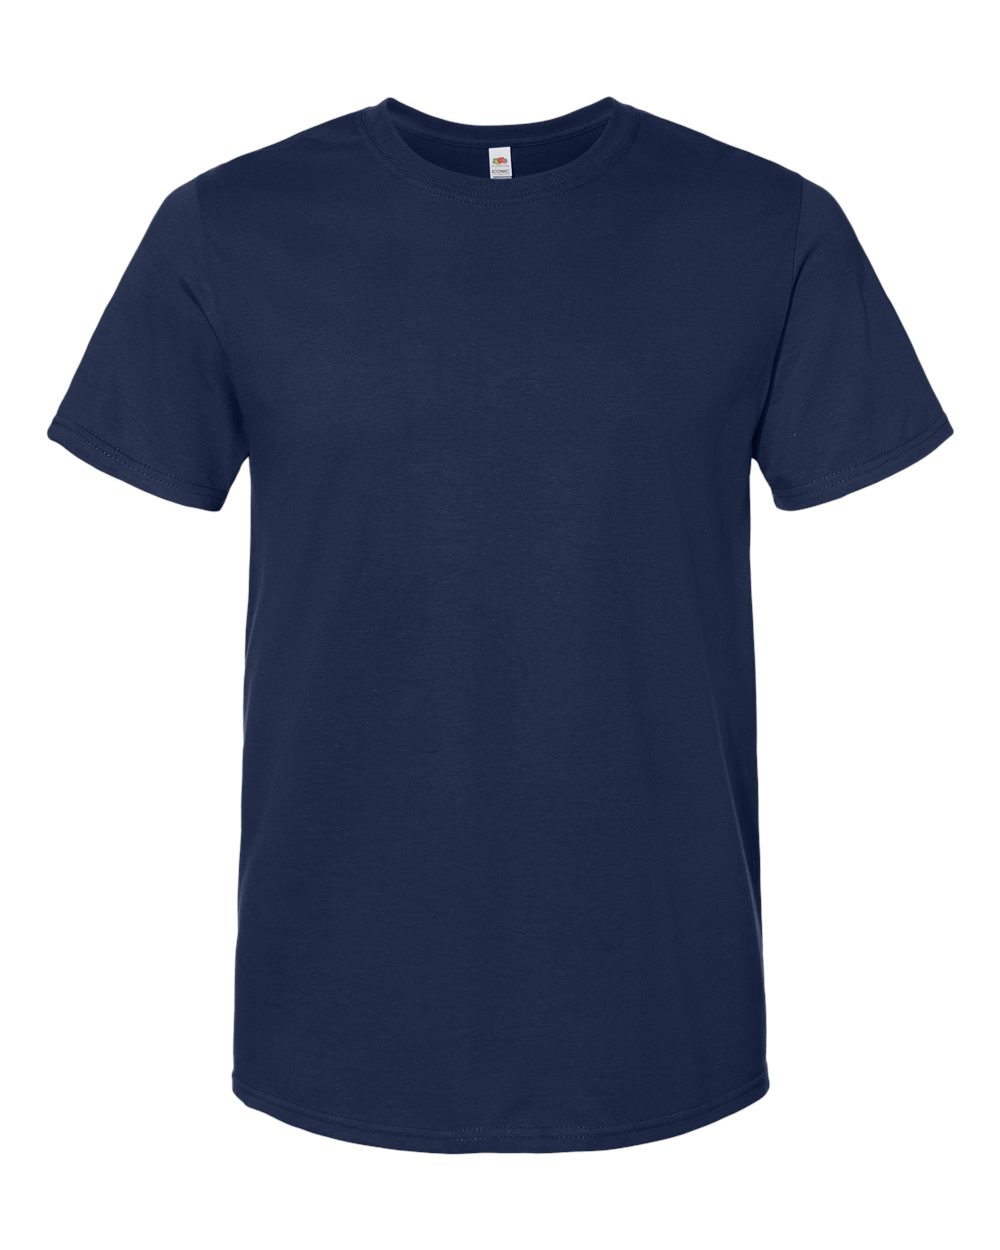 Fruit of the Loom IC47MR - Unisex Iconic T-Shirt $3.39 - T-Shirts